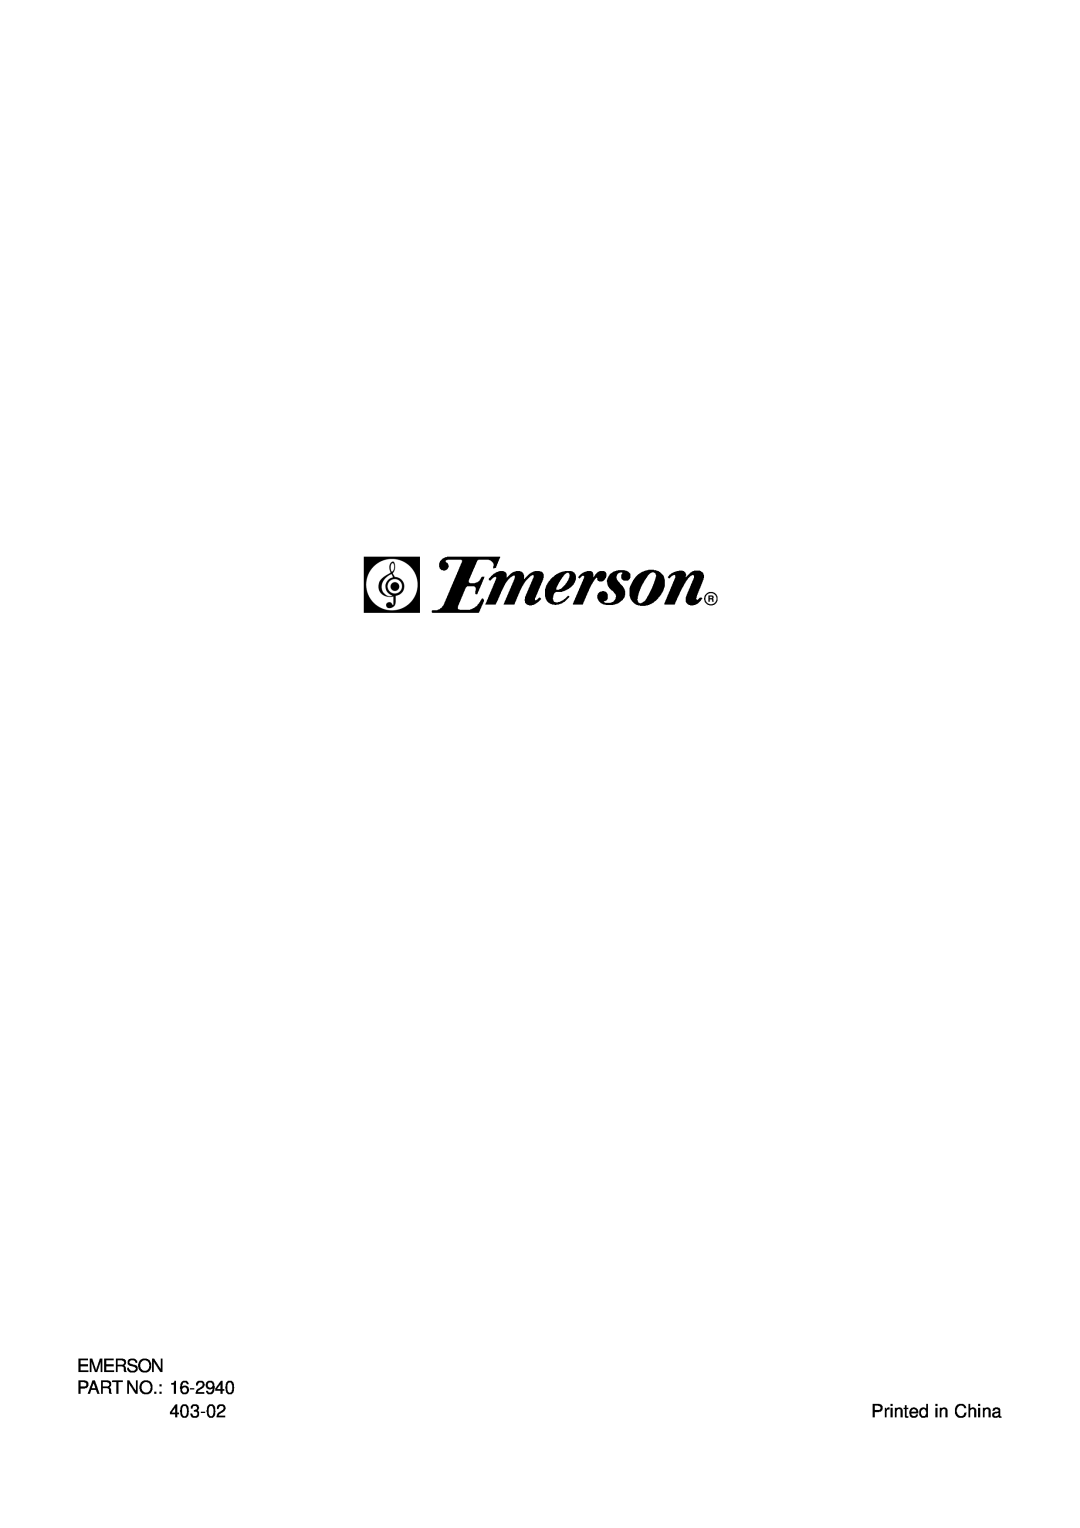 Emerson AV50 owner manual Emerson, 403-02 